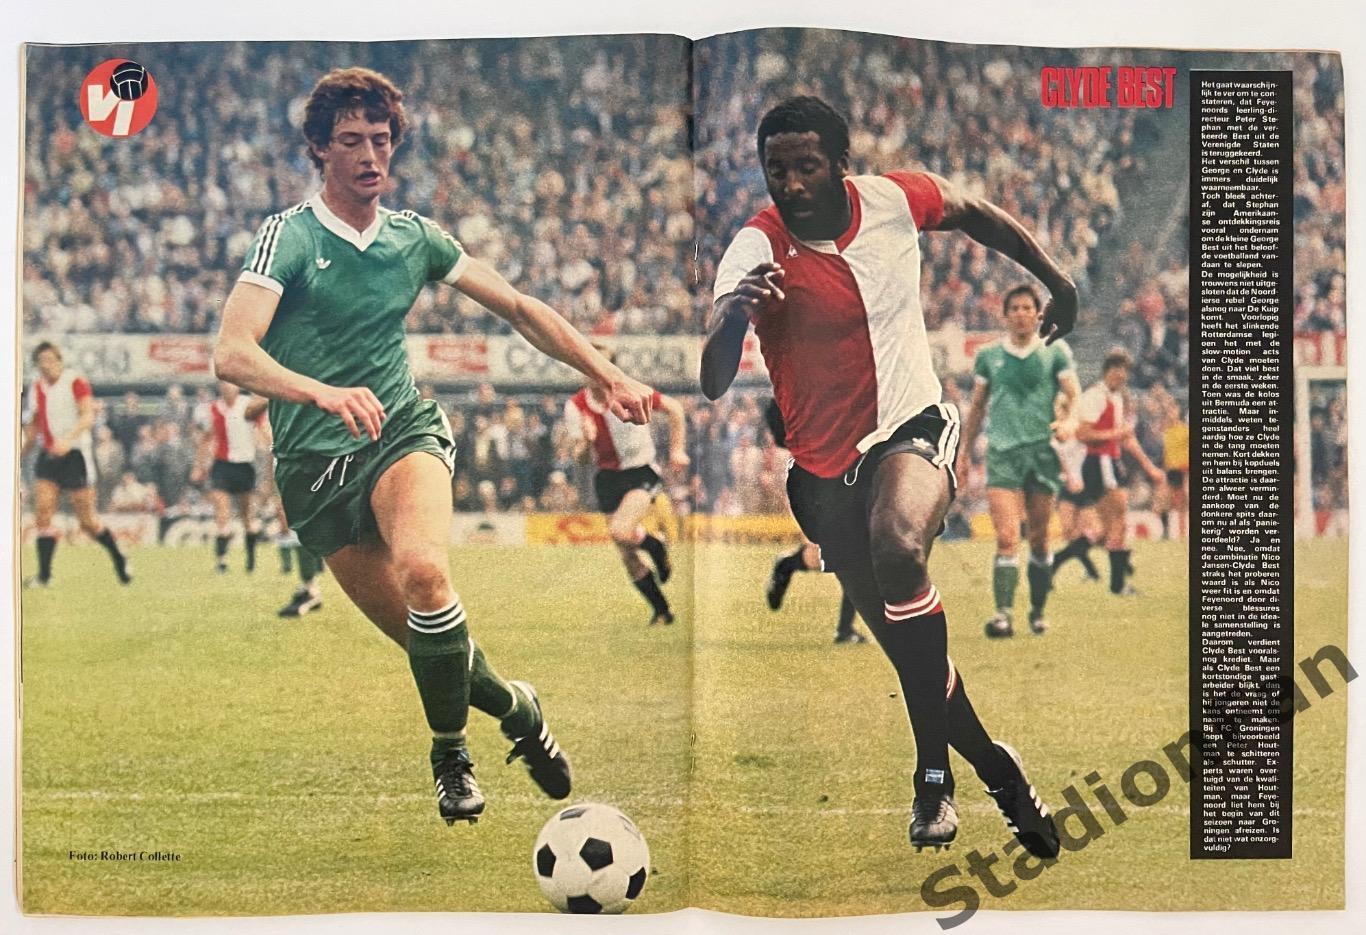 Журнал Voetbal nr.40 - 1977 год. 2